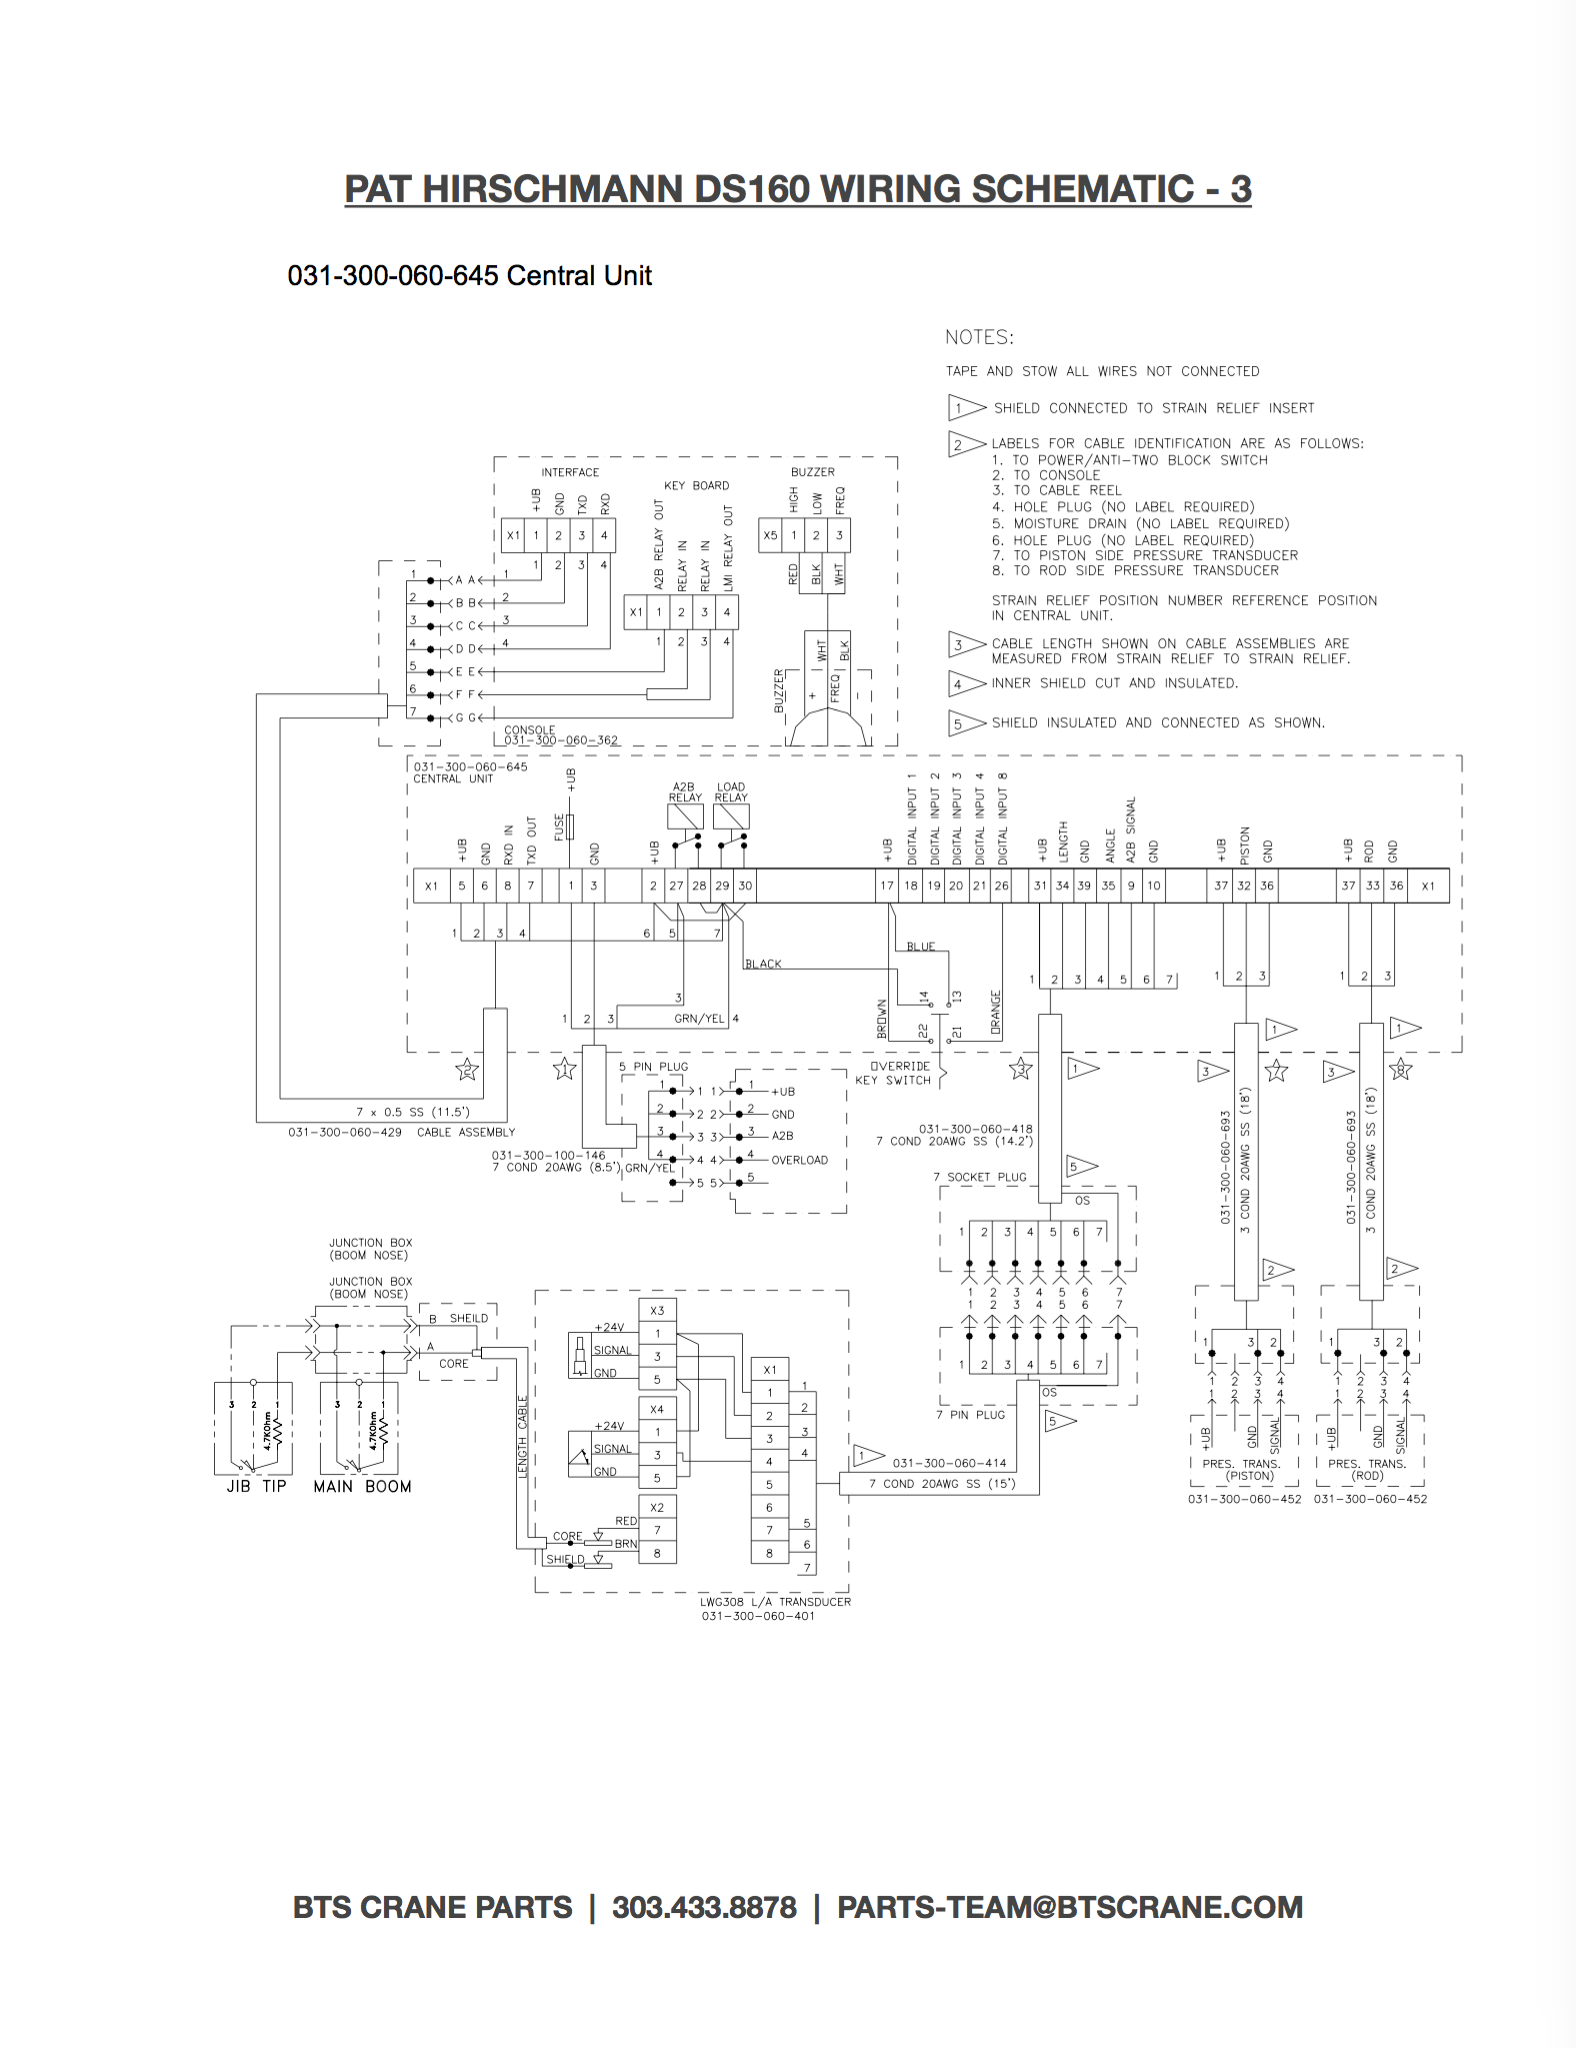 Hirschmann DS160 Wiring Schematic 